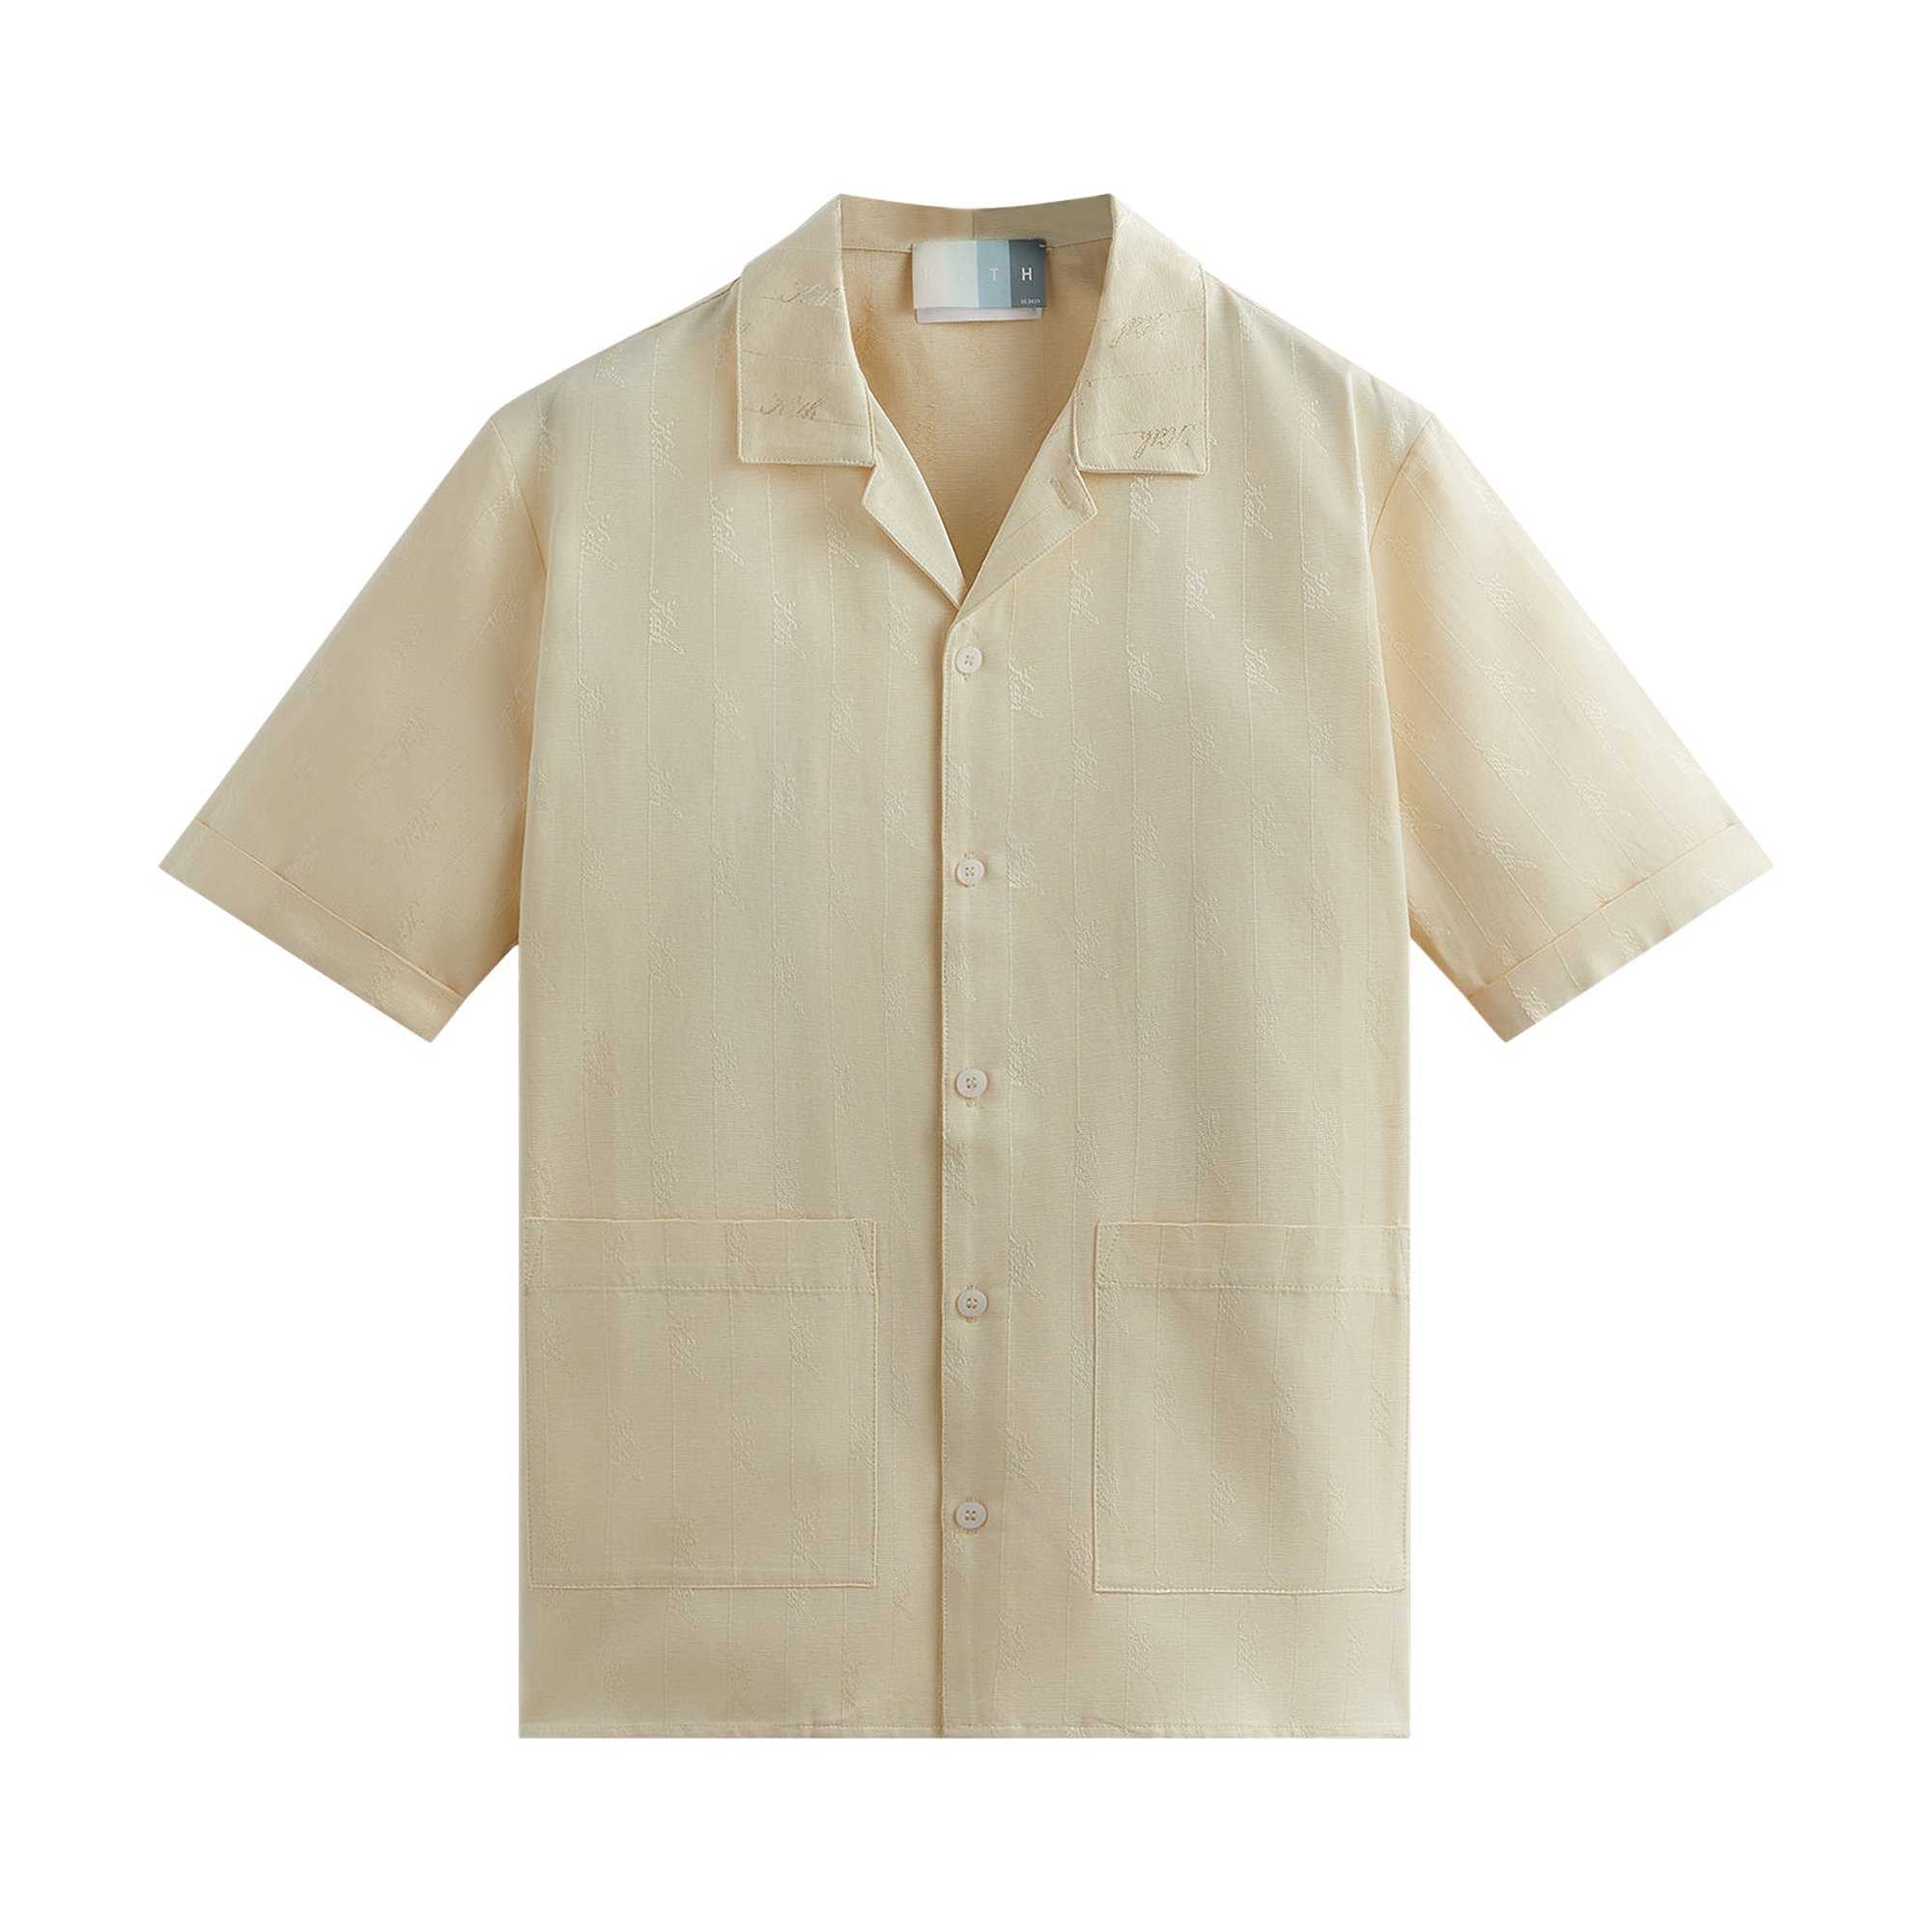 Buy Kith Jacquard Faille Reade Shirt 'Vital' - KHM031148 709 | GOAT UK